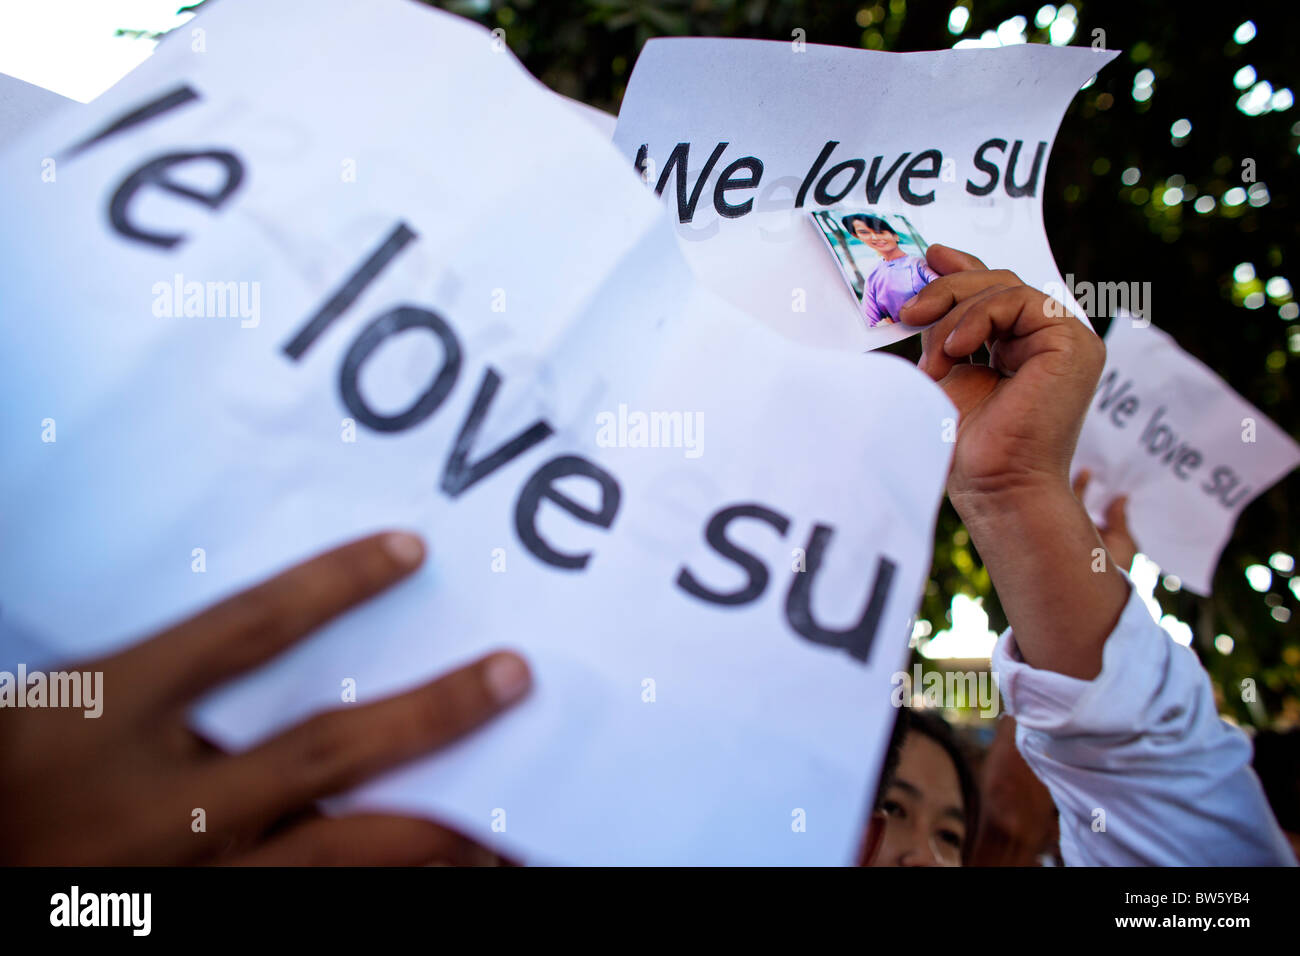 Les partisans d'Aung San Suu Kyi tenir des pancartes ' nous aimons su' au siège de la NLD. Banque D'Images